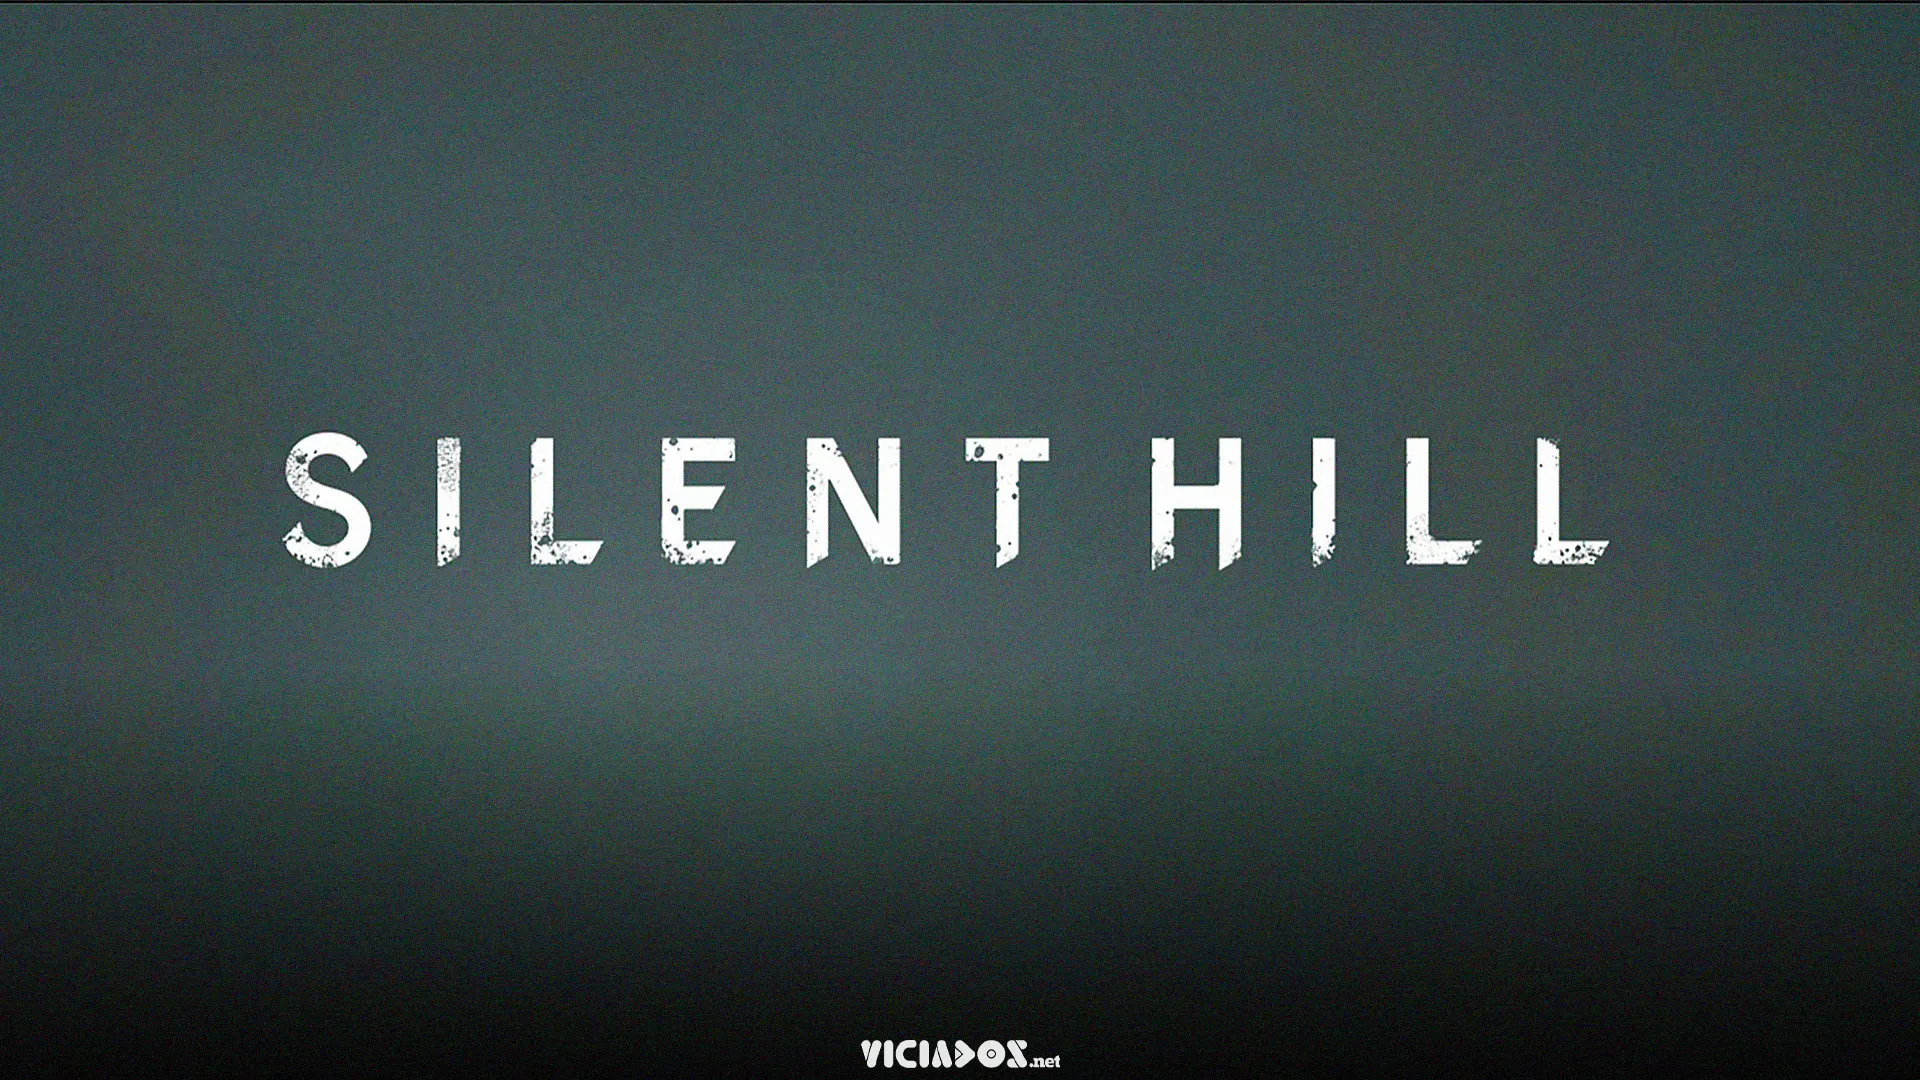 Novo jogo vindo aí? Novidades da franquia Silent Hill serão reveladas ainda neste mês 2022 Viciados